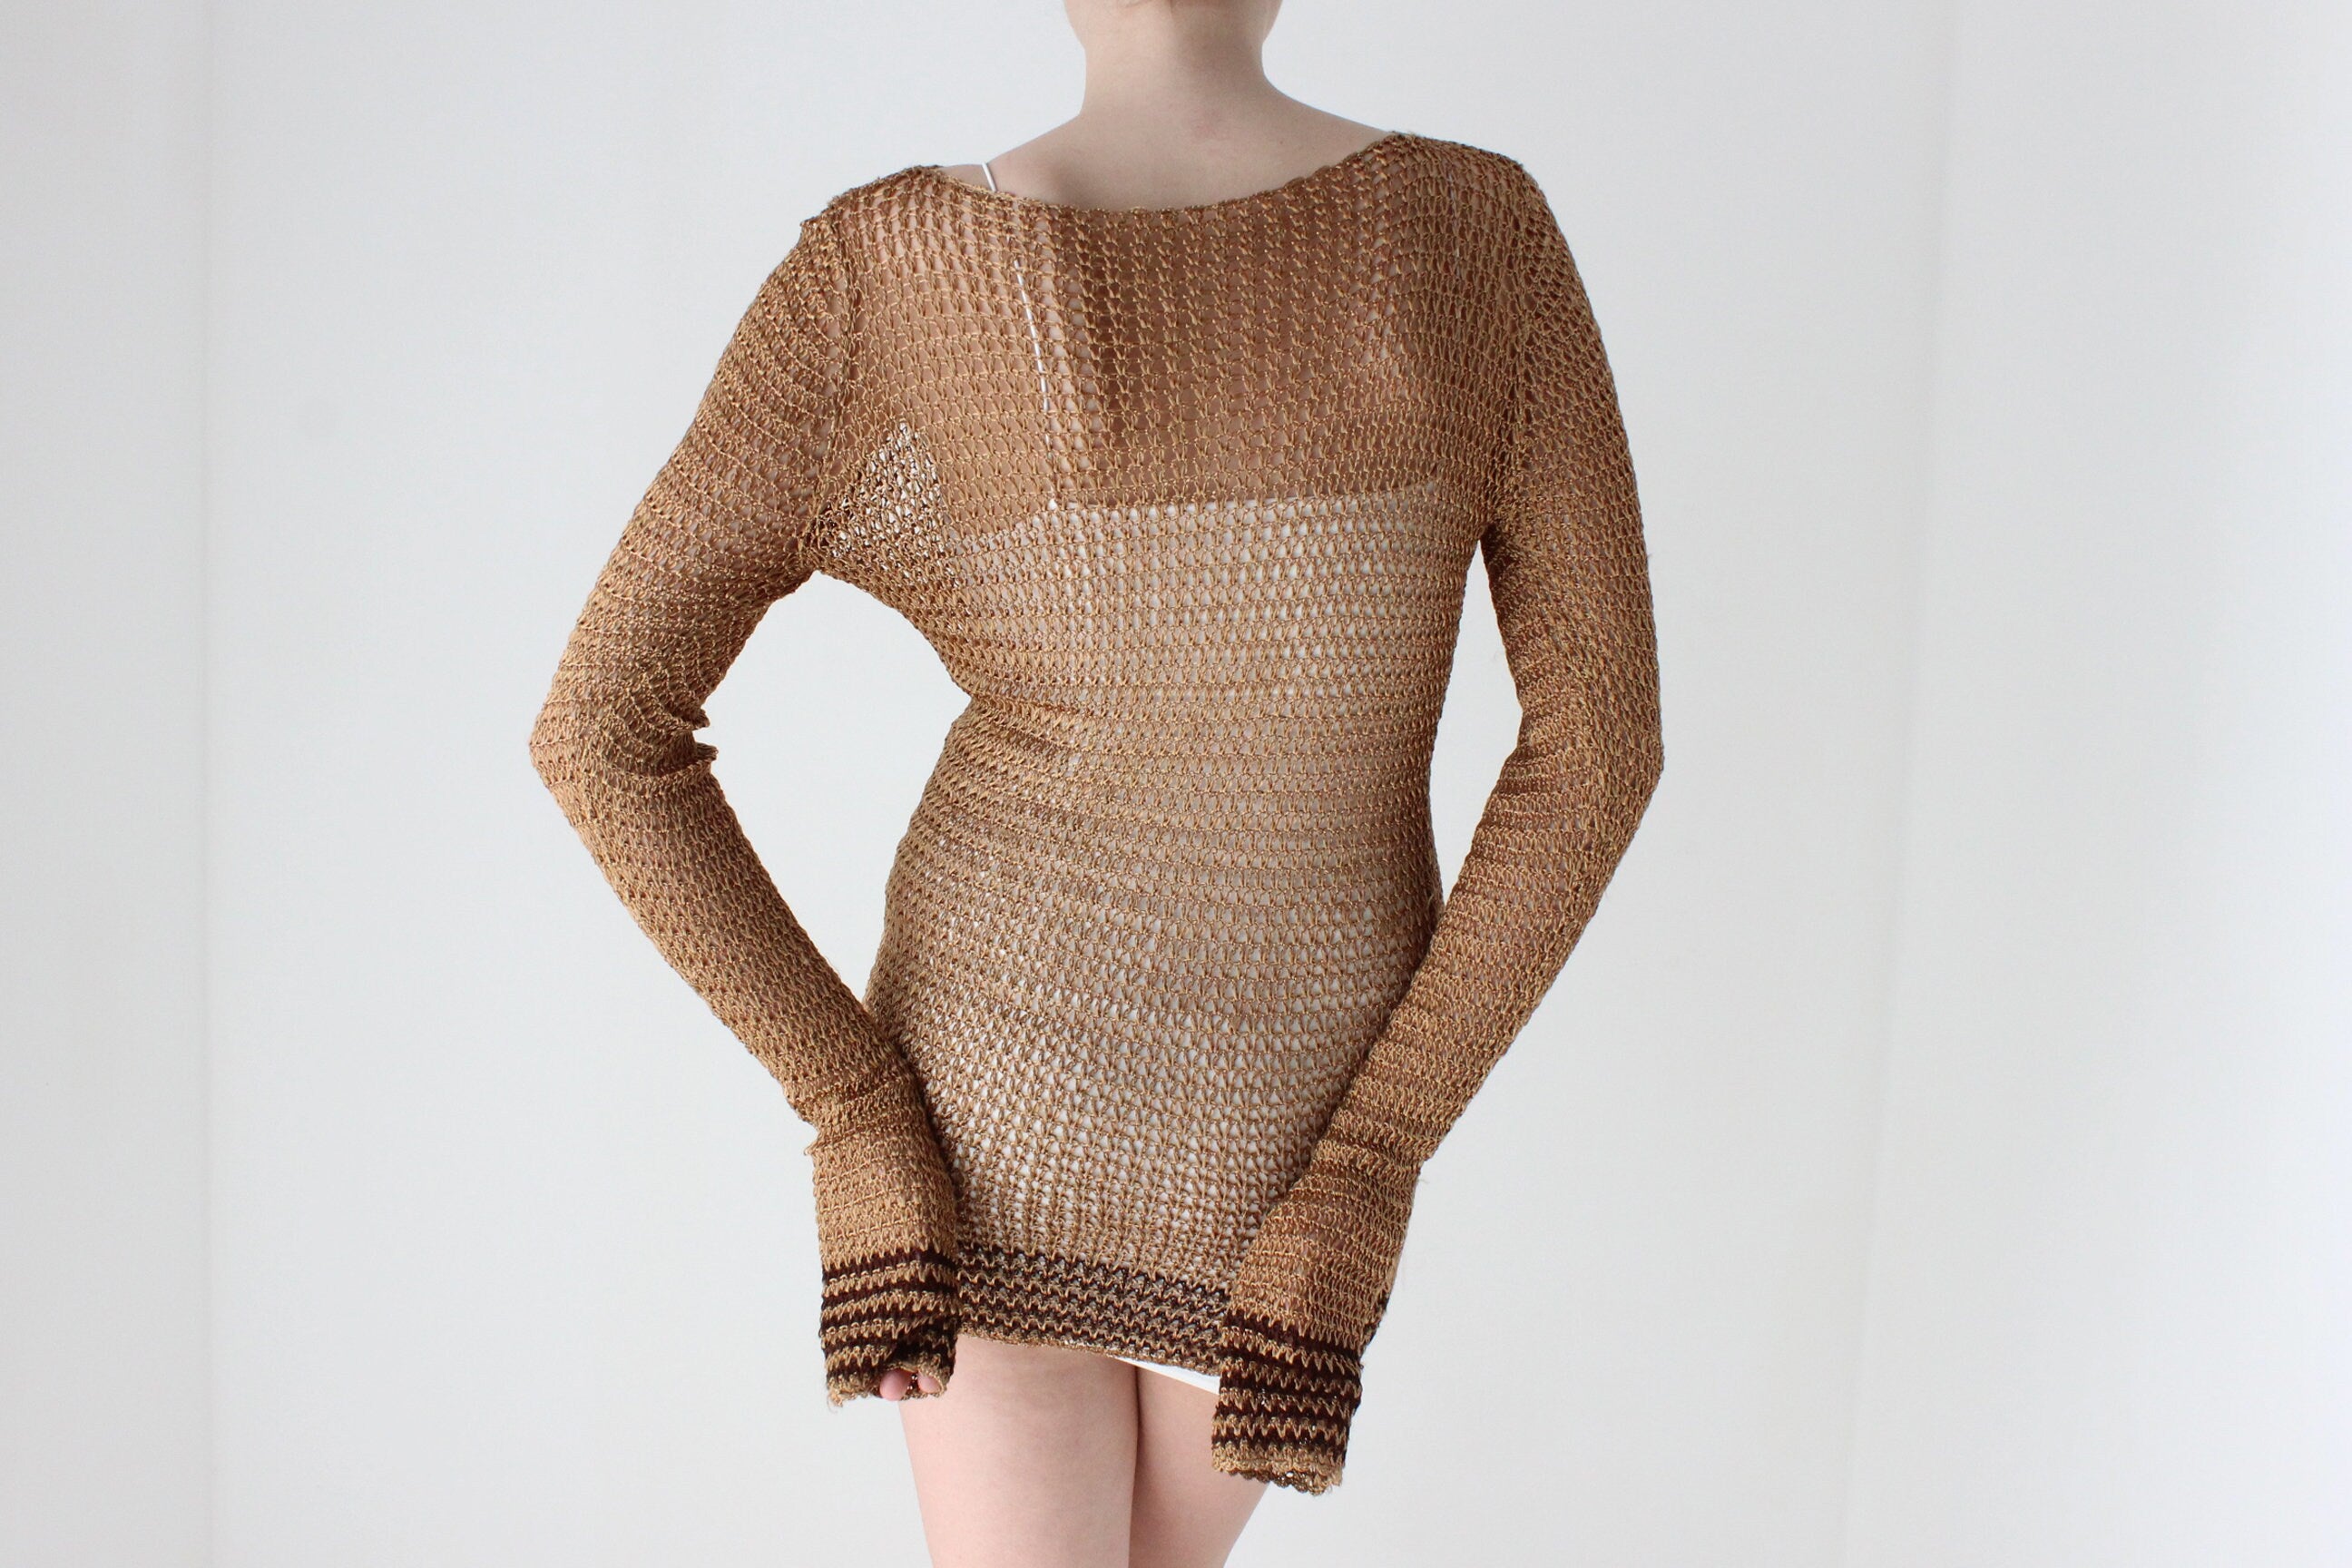 70s Open Knit Crochet Macrame Top or Mini